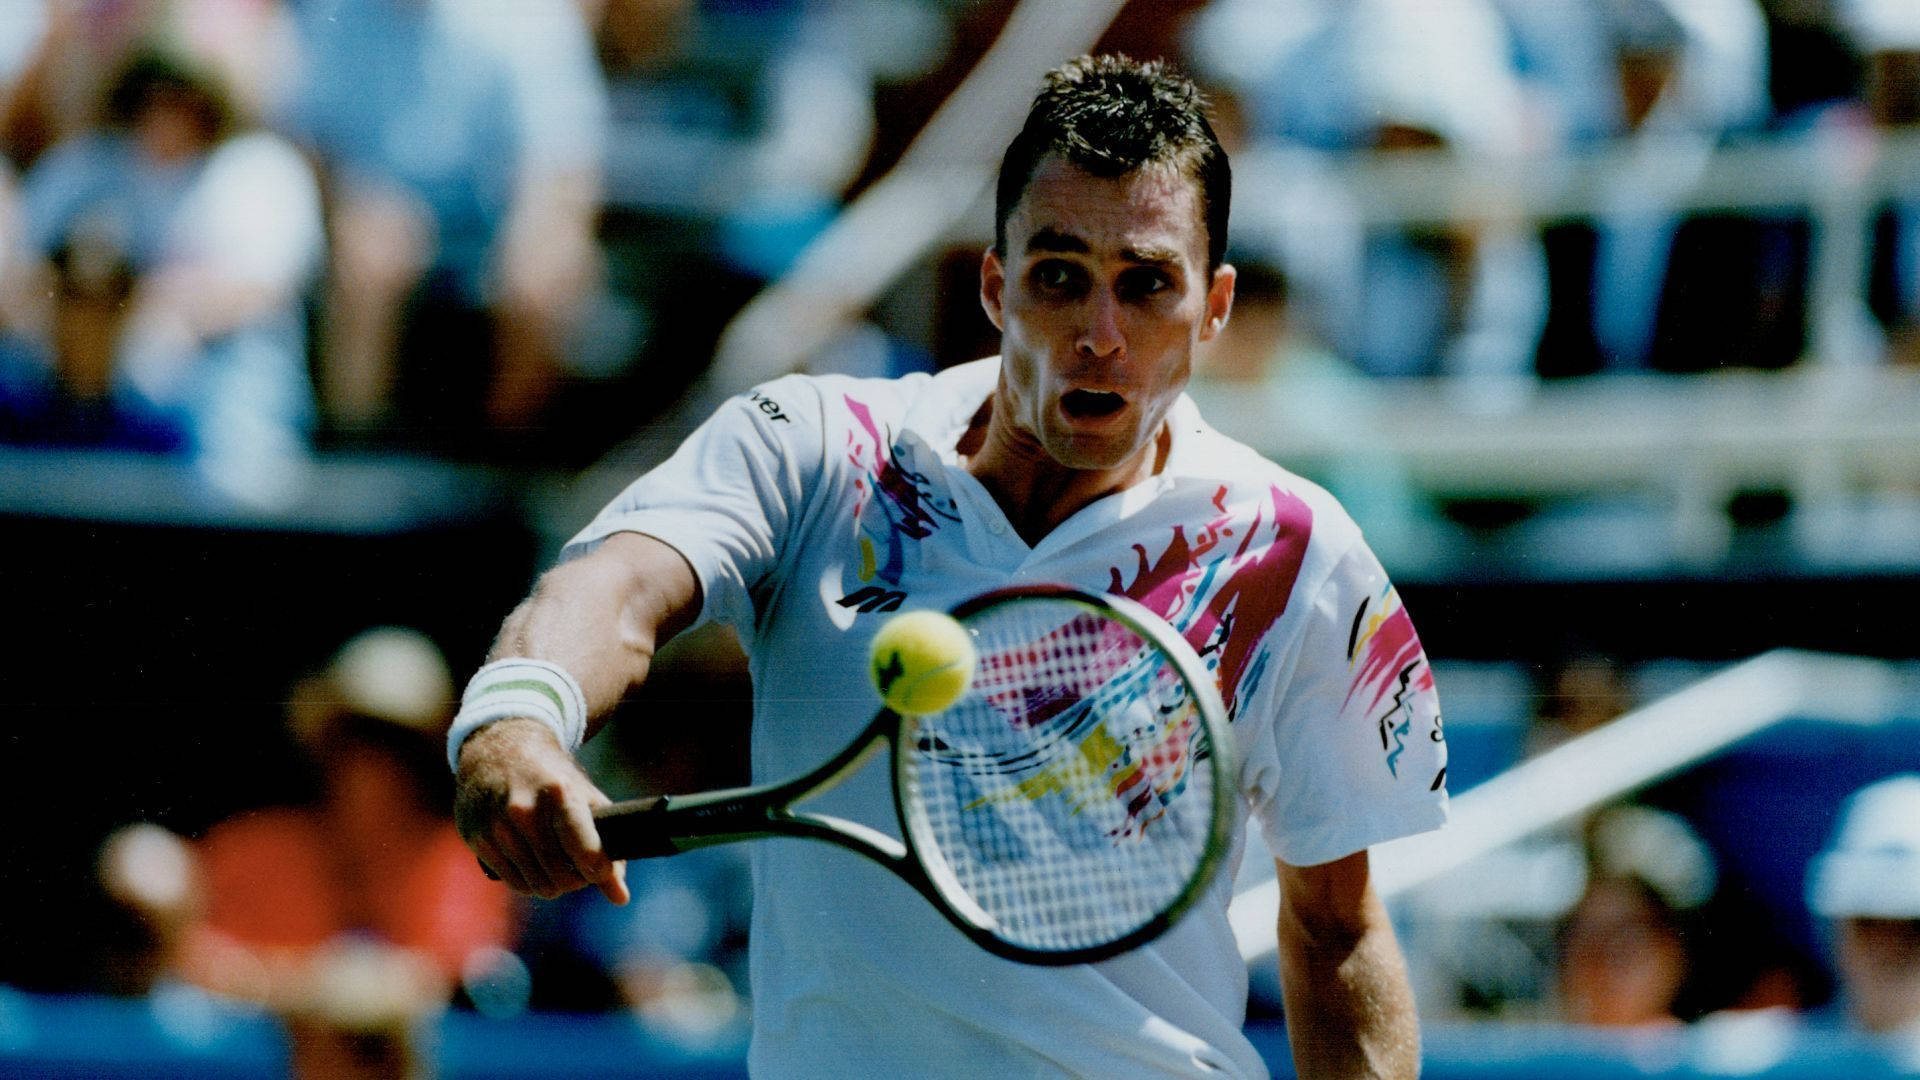 Ivan Lendl Tennis Player Wallpaper